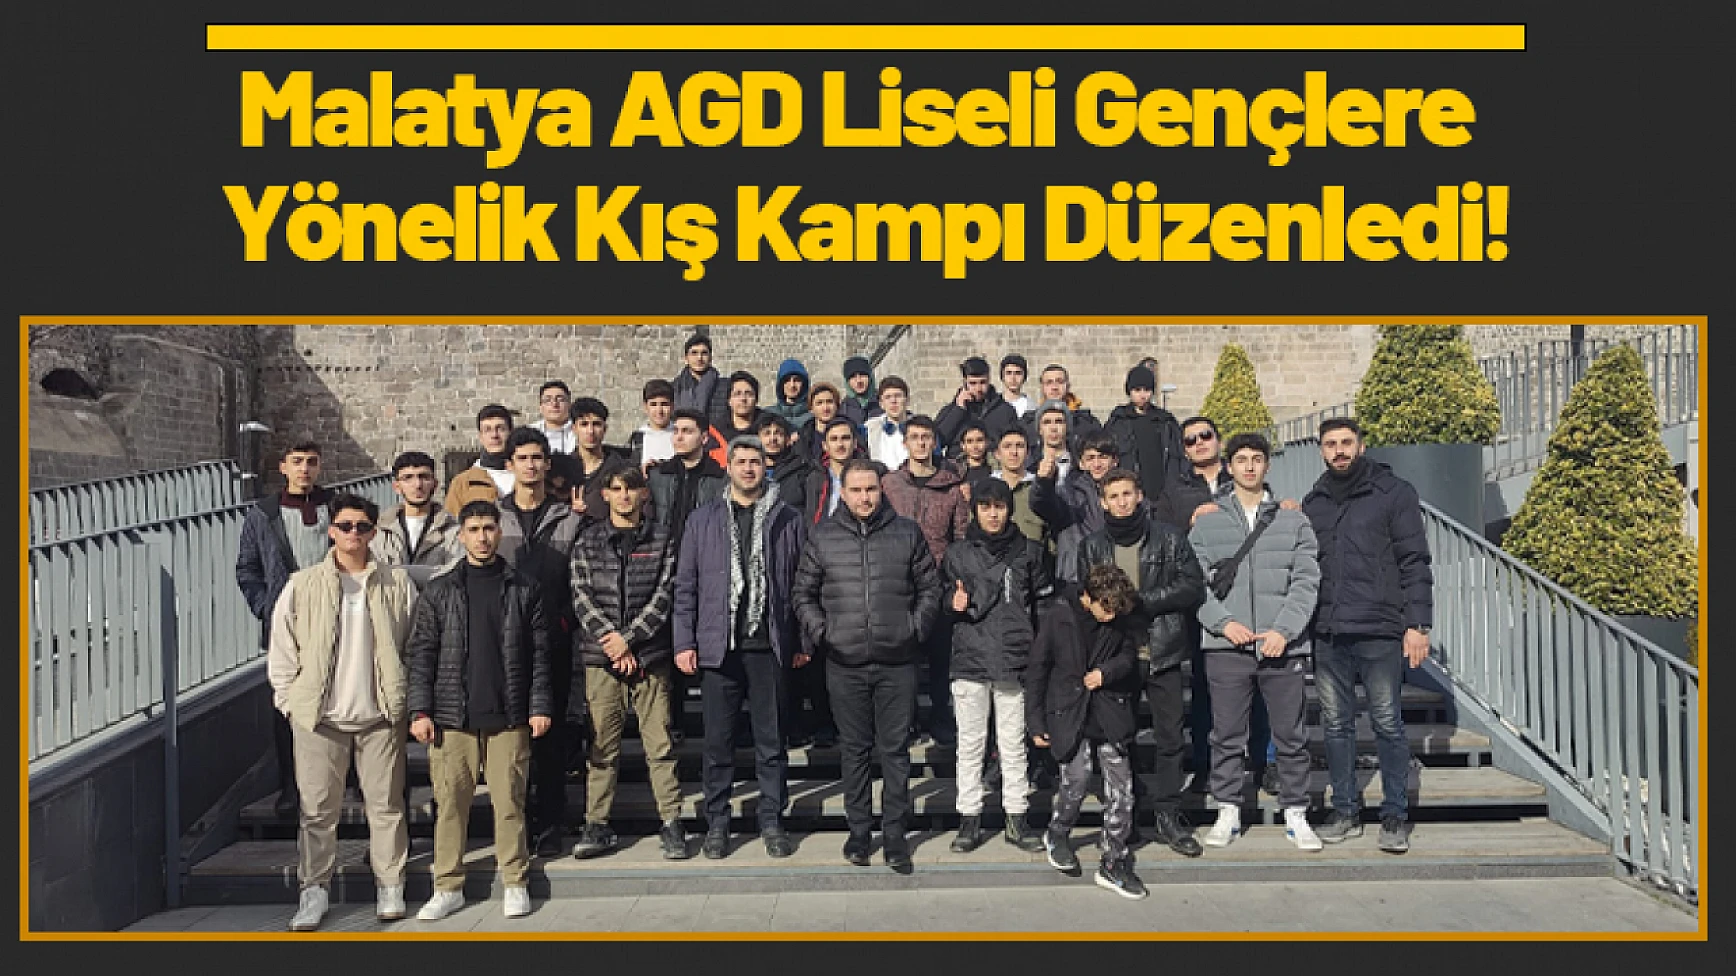 Malatya AGD Liseli Gençlere Yönelik Kış Kampı Düzenledi!